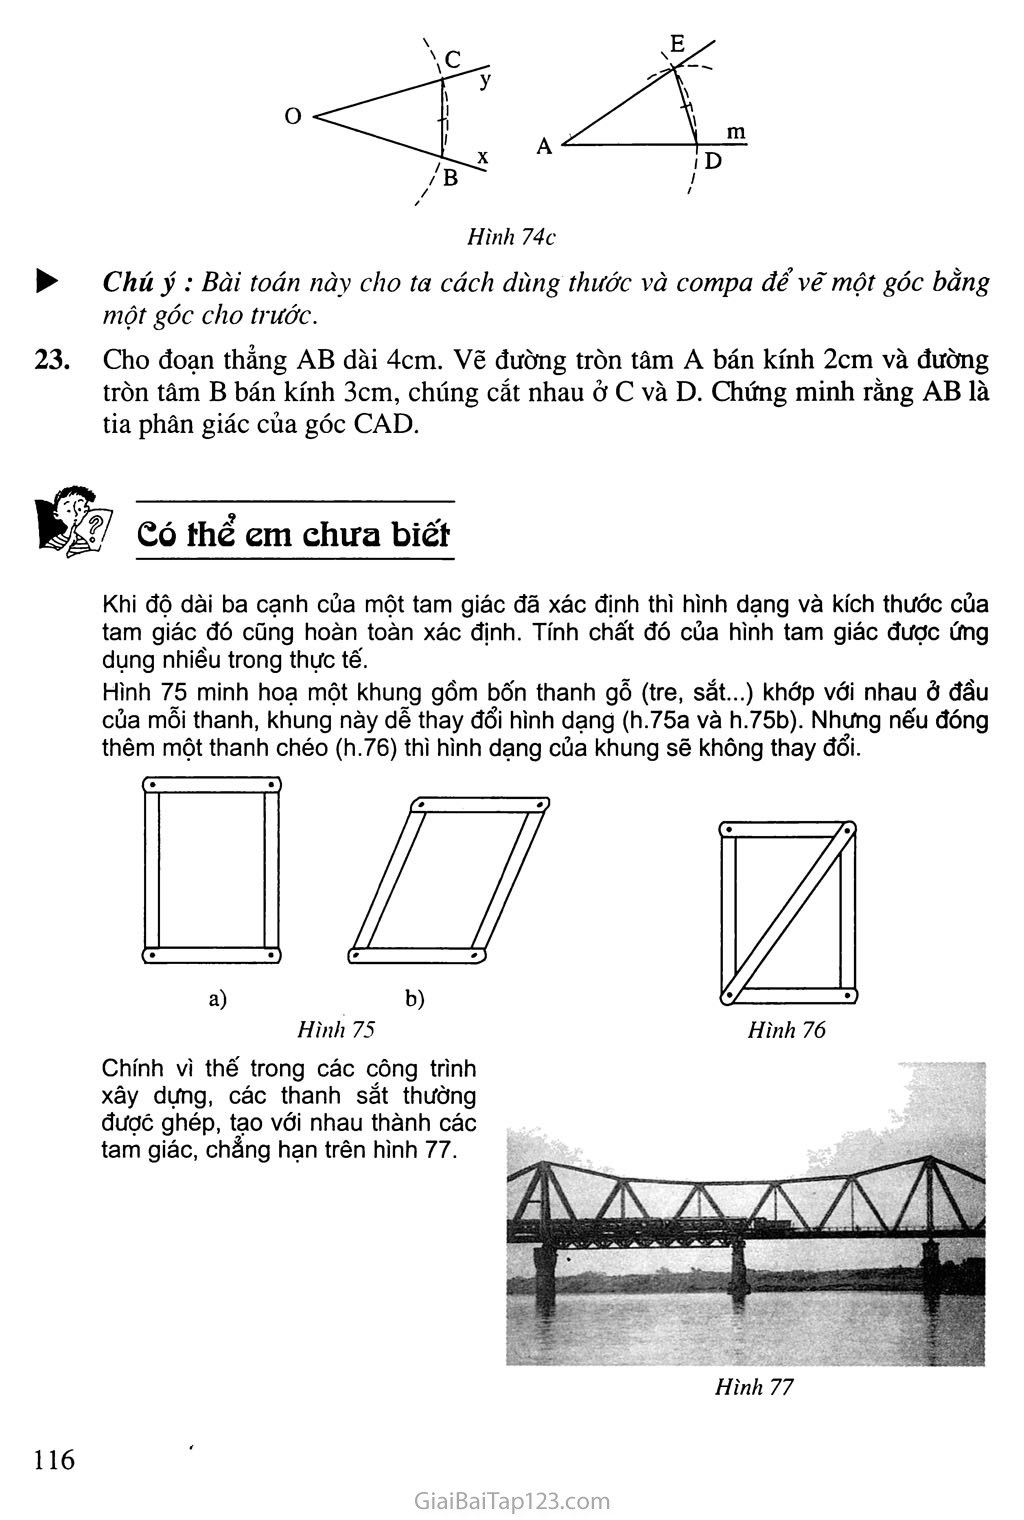 Bài 3. Trường hợp bằng nhau thứ nhất của tam giác: cạnh - cạnh - cạnh (c. c. c) trang 5